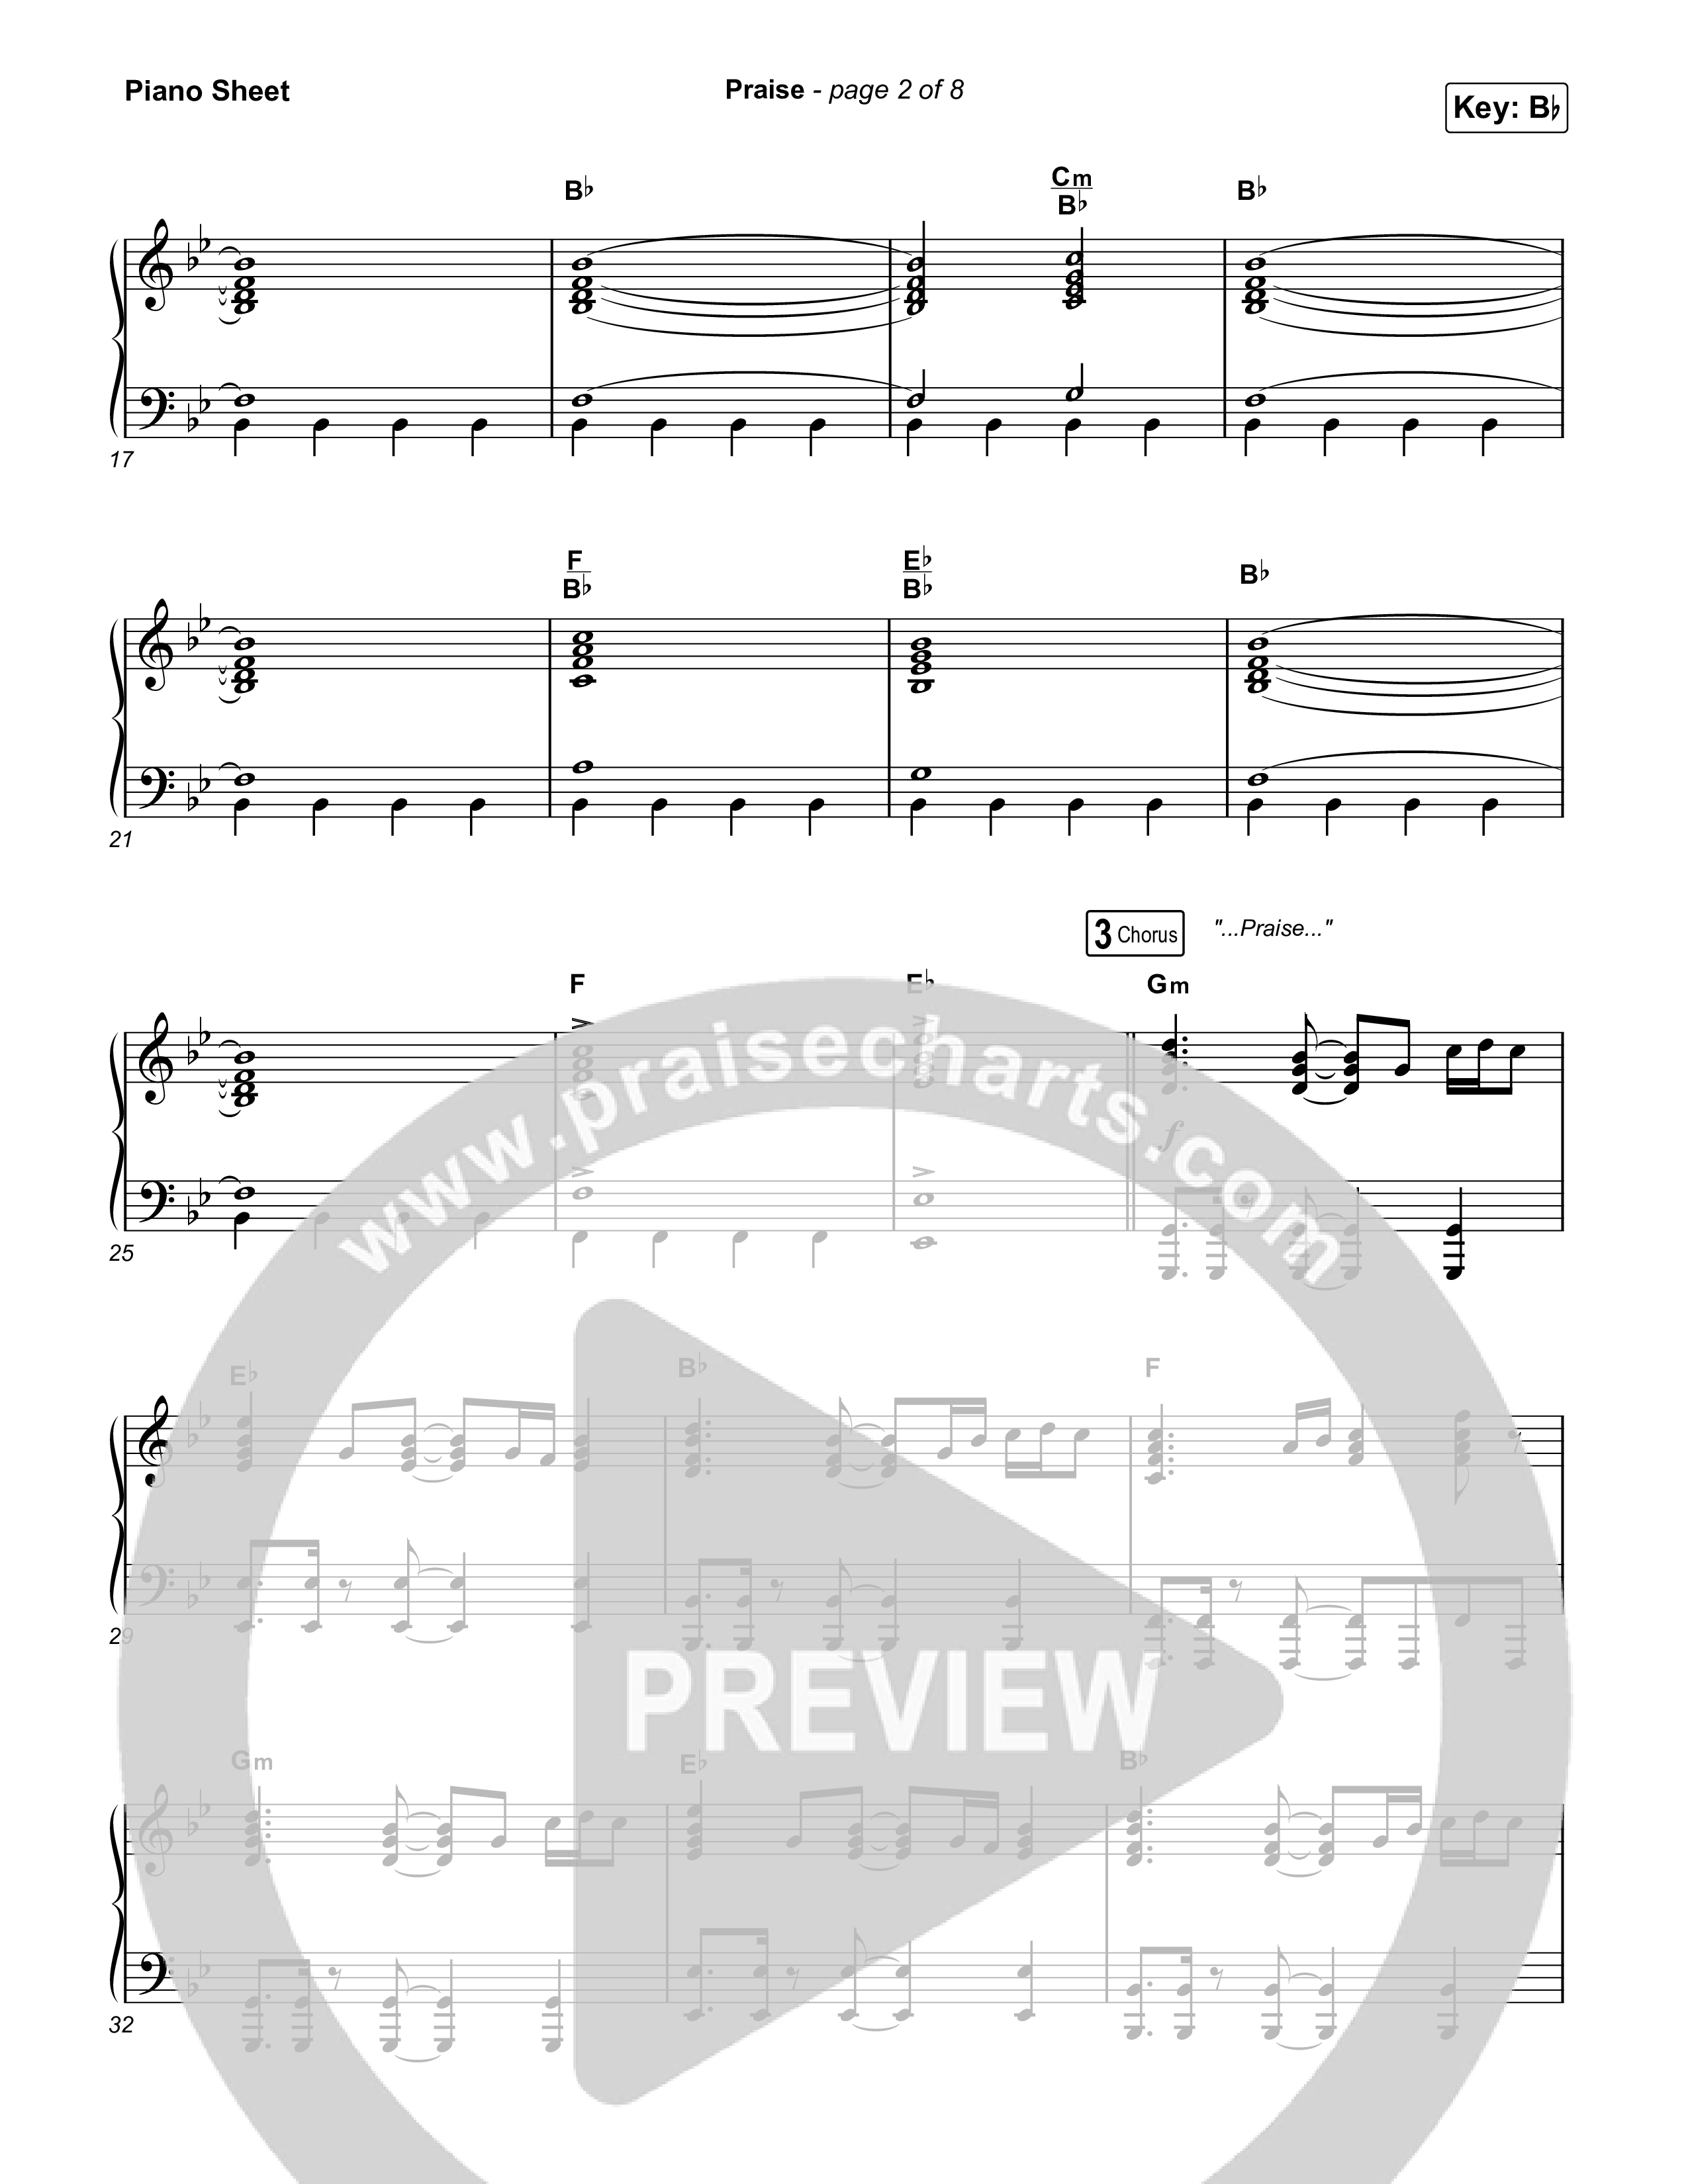 Praise (Choral Anthem SATB) Piano Sheet (Elevation Worship / Chris Brown / Brandon Lake / Chandler Moore / Arr. Mason Brown)